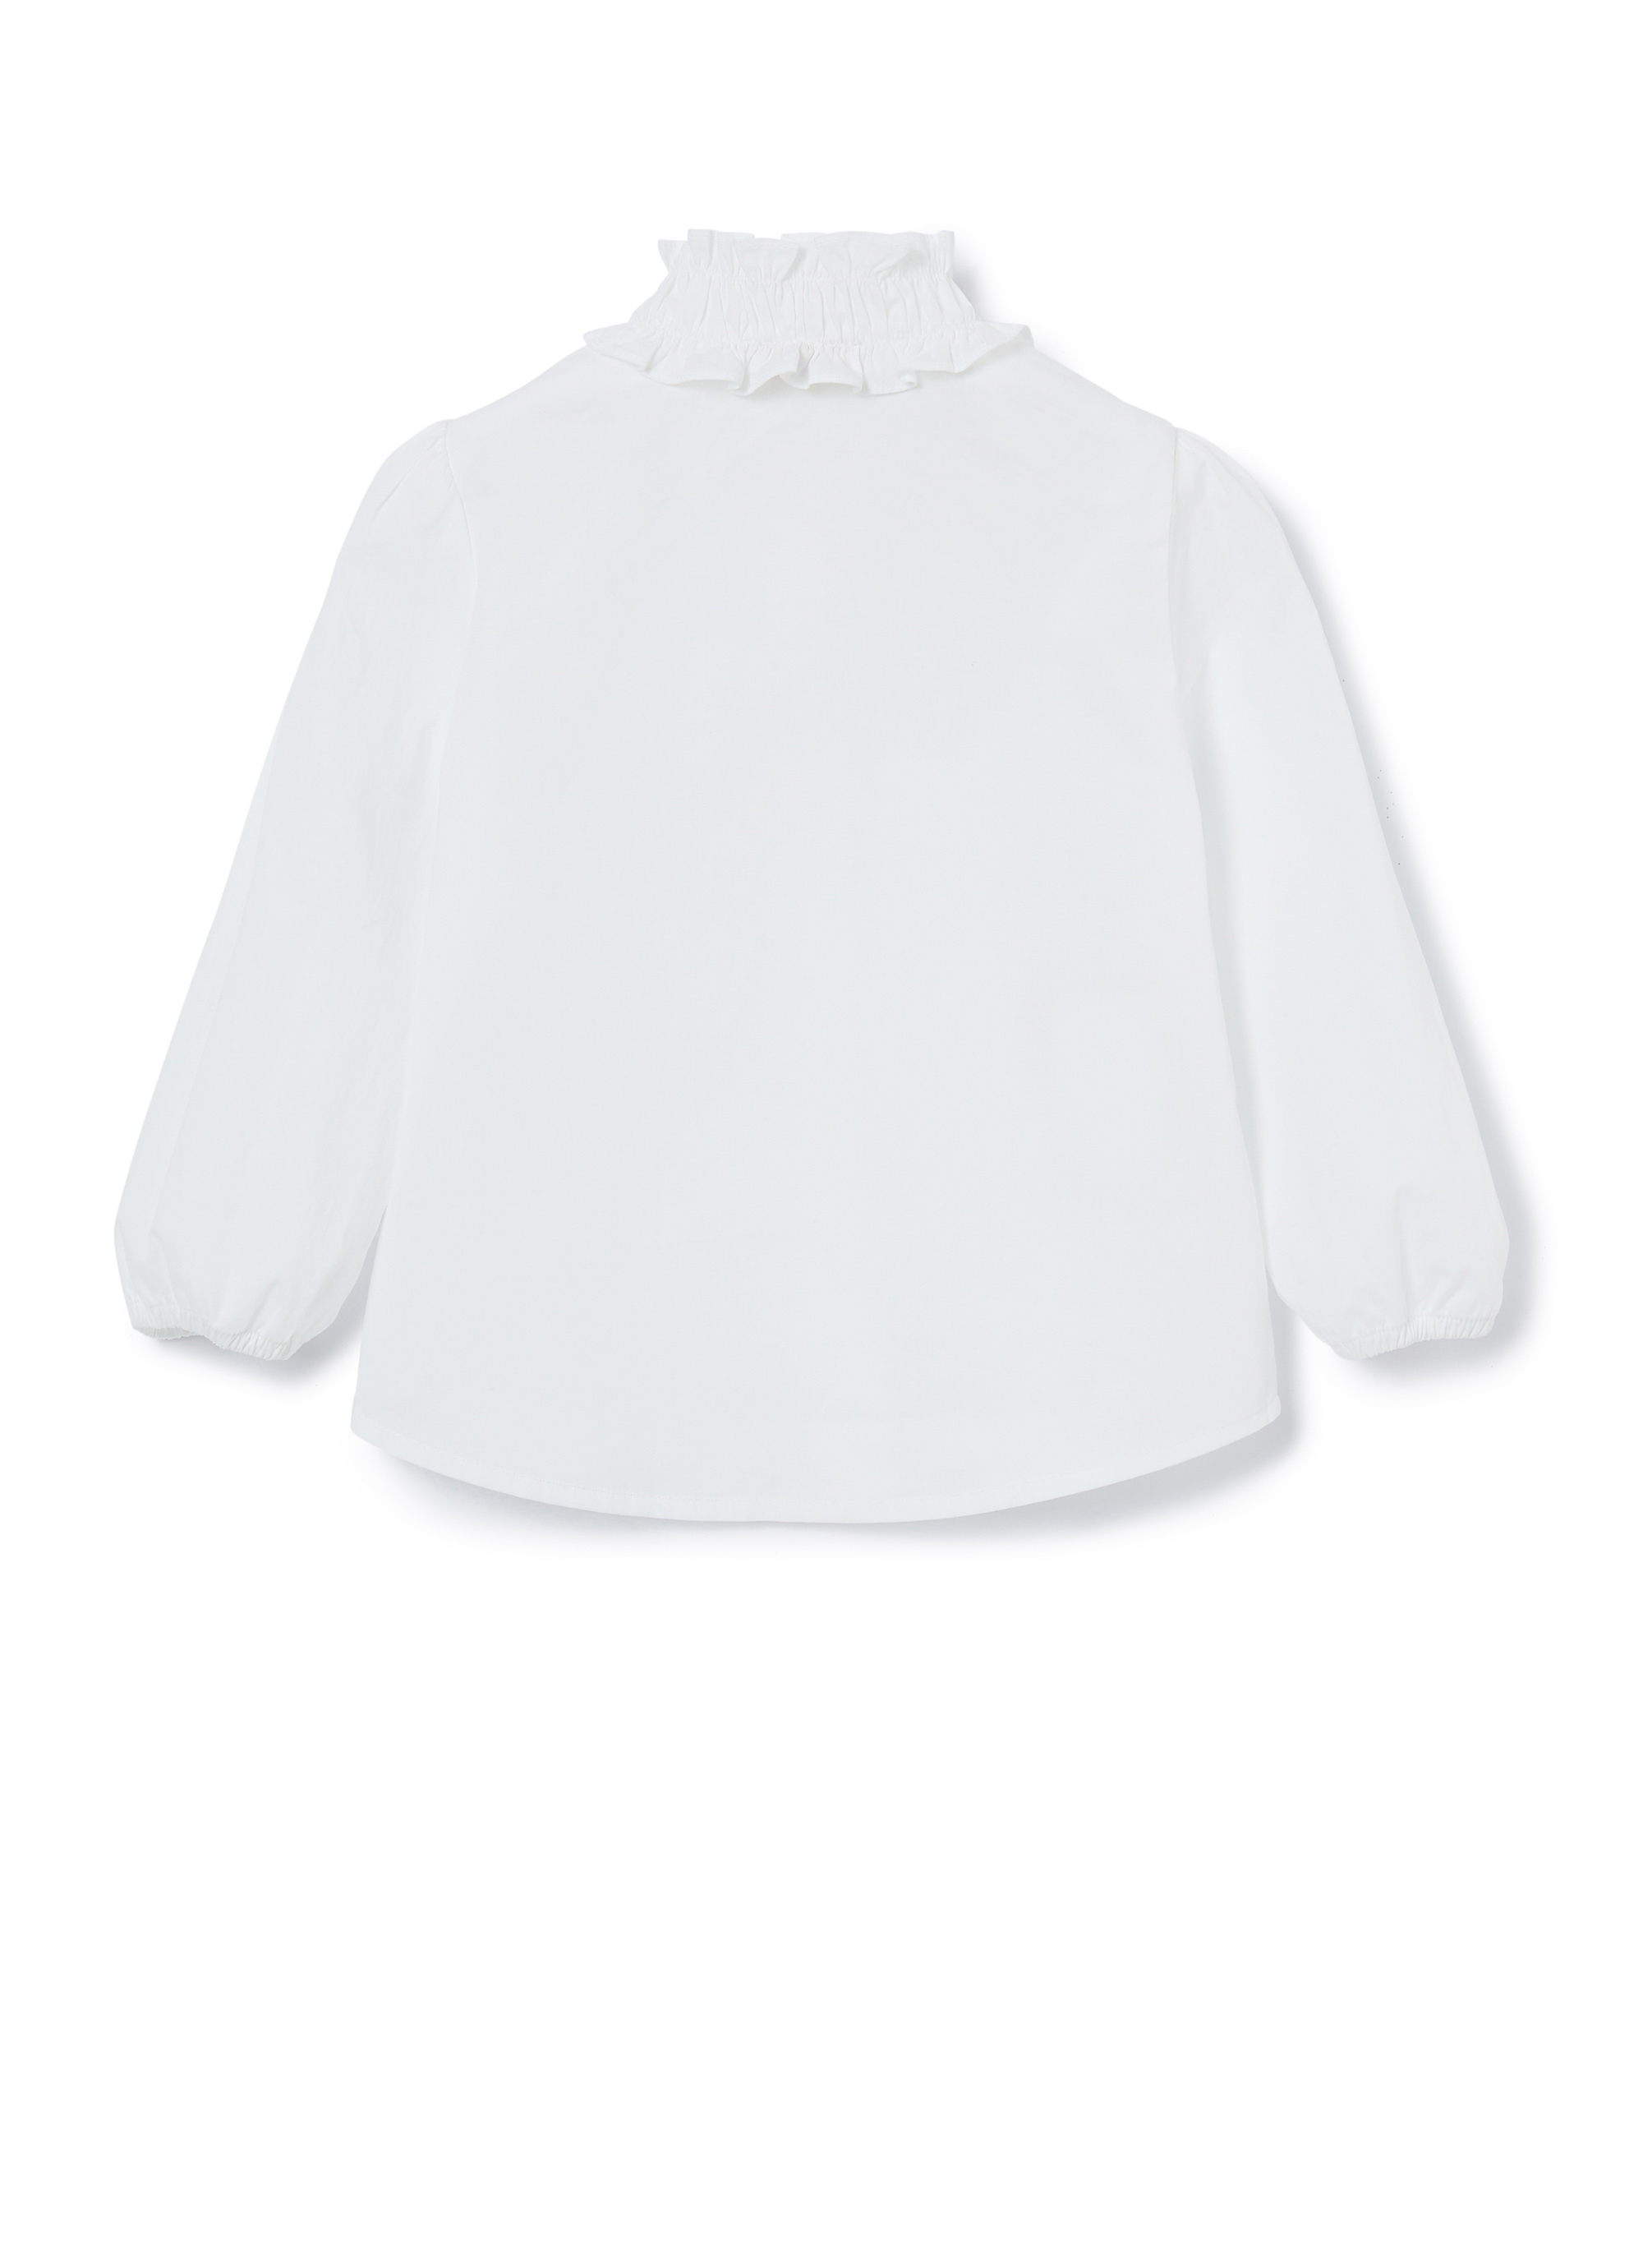 Weißes Hemd mit gekräuseltem Kragen - Weiss | Il Gufo